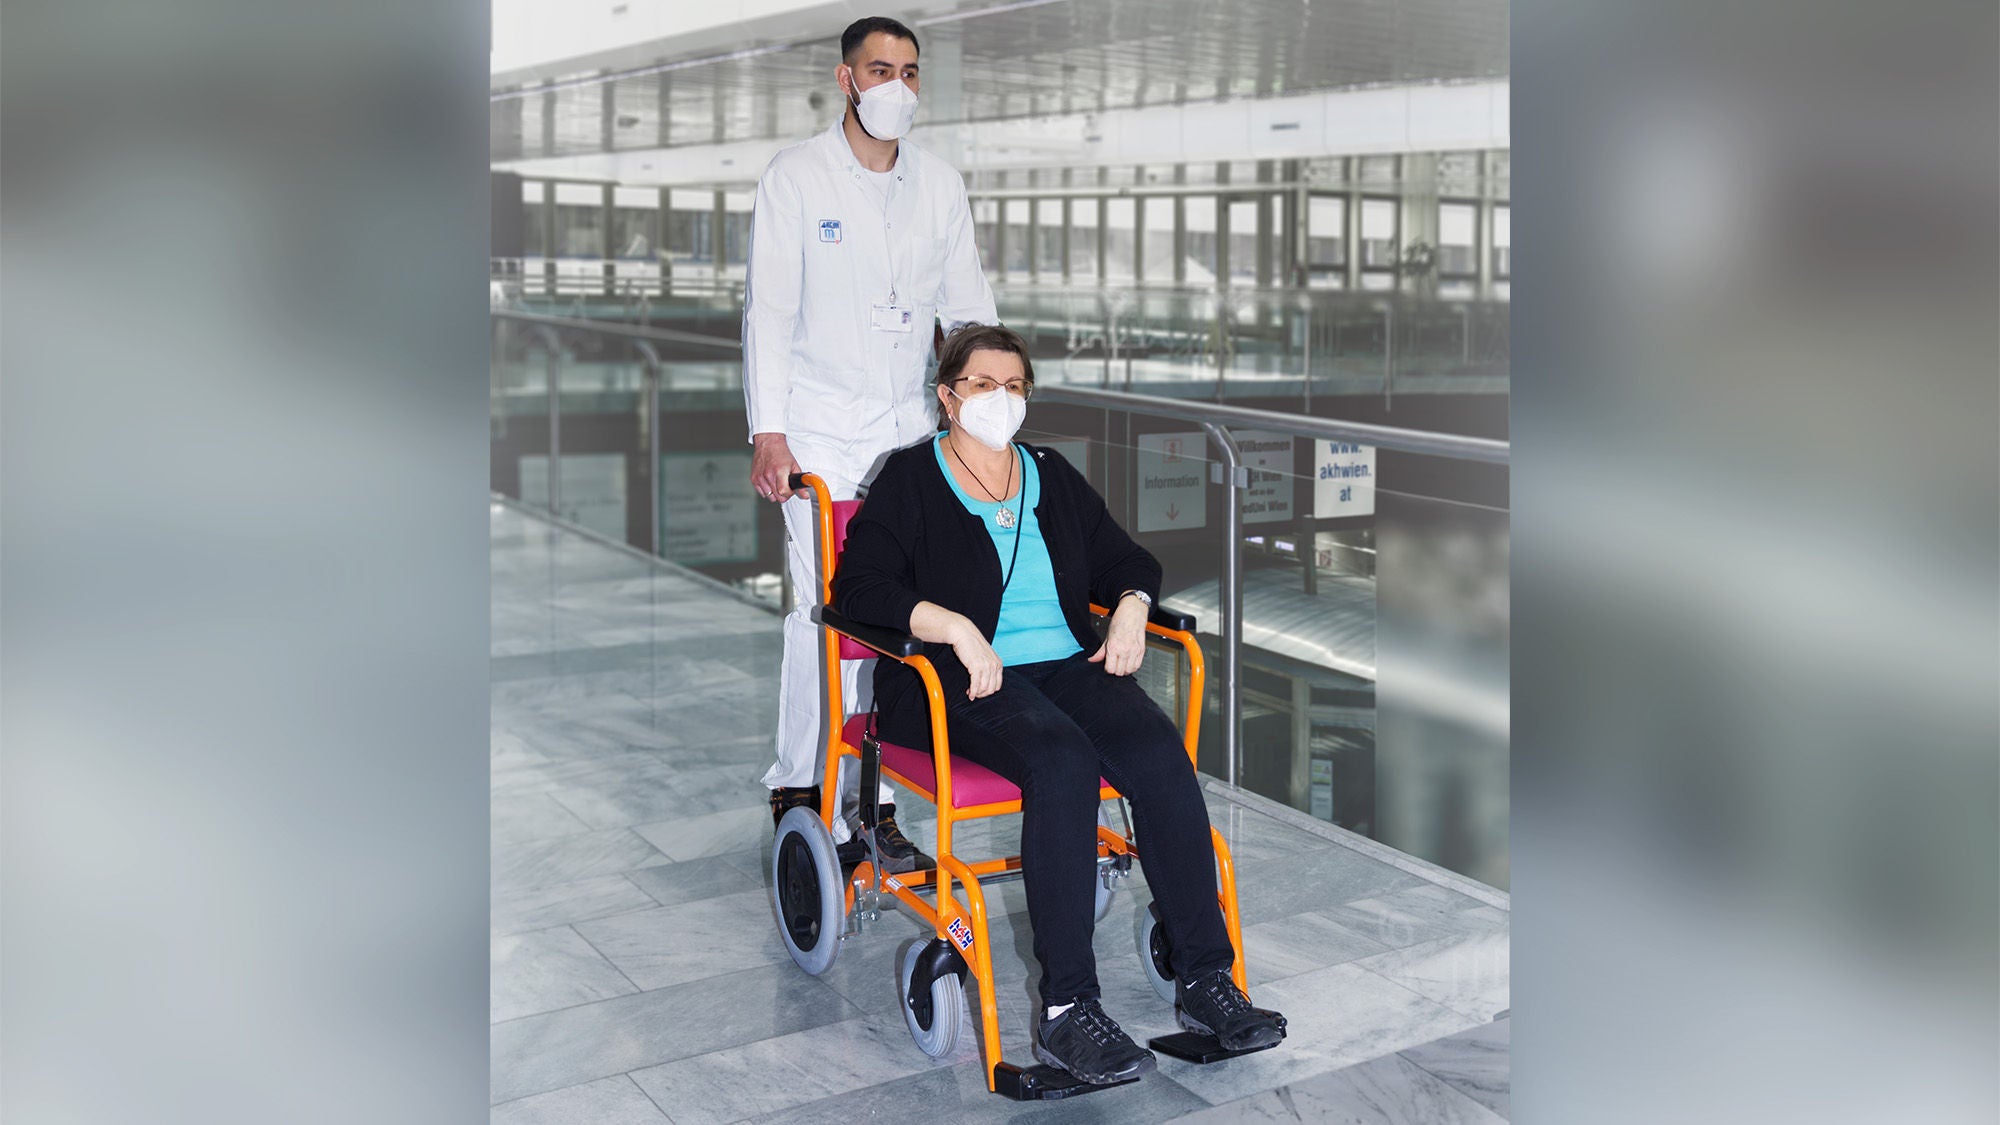 Ein Pfleger mit Mundschutz schiebt den Rollstuhl mit einer darinsitzenden Frau, die ebenfalls Mundschutz trägt. Das herumliegende Ambiente sieht nach einer Klinik aus.